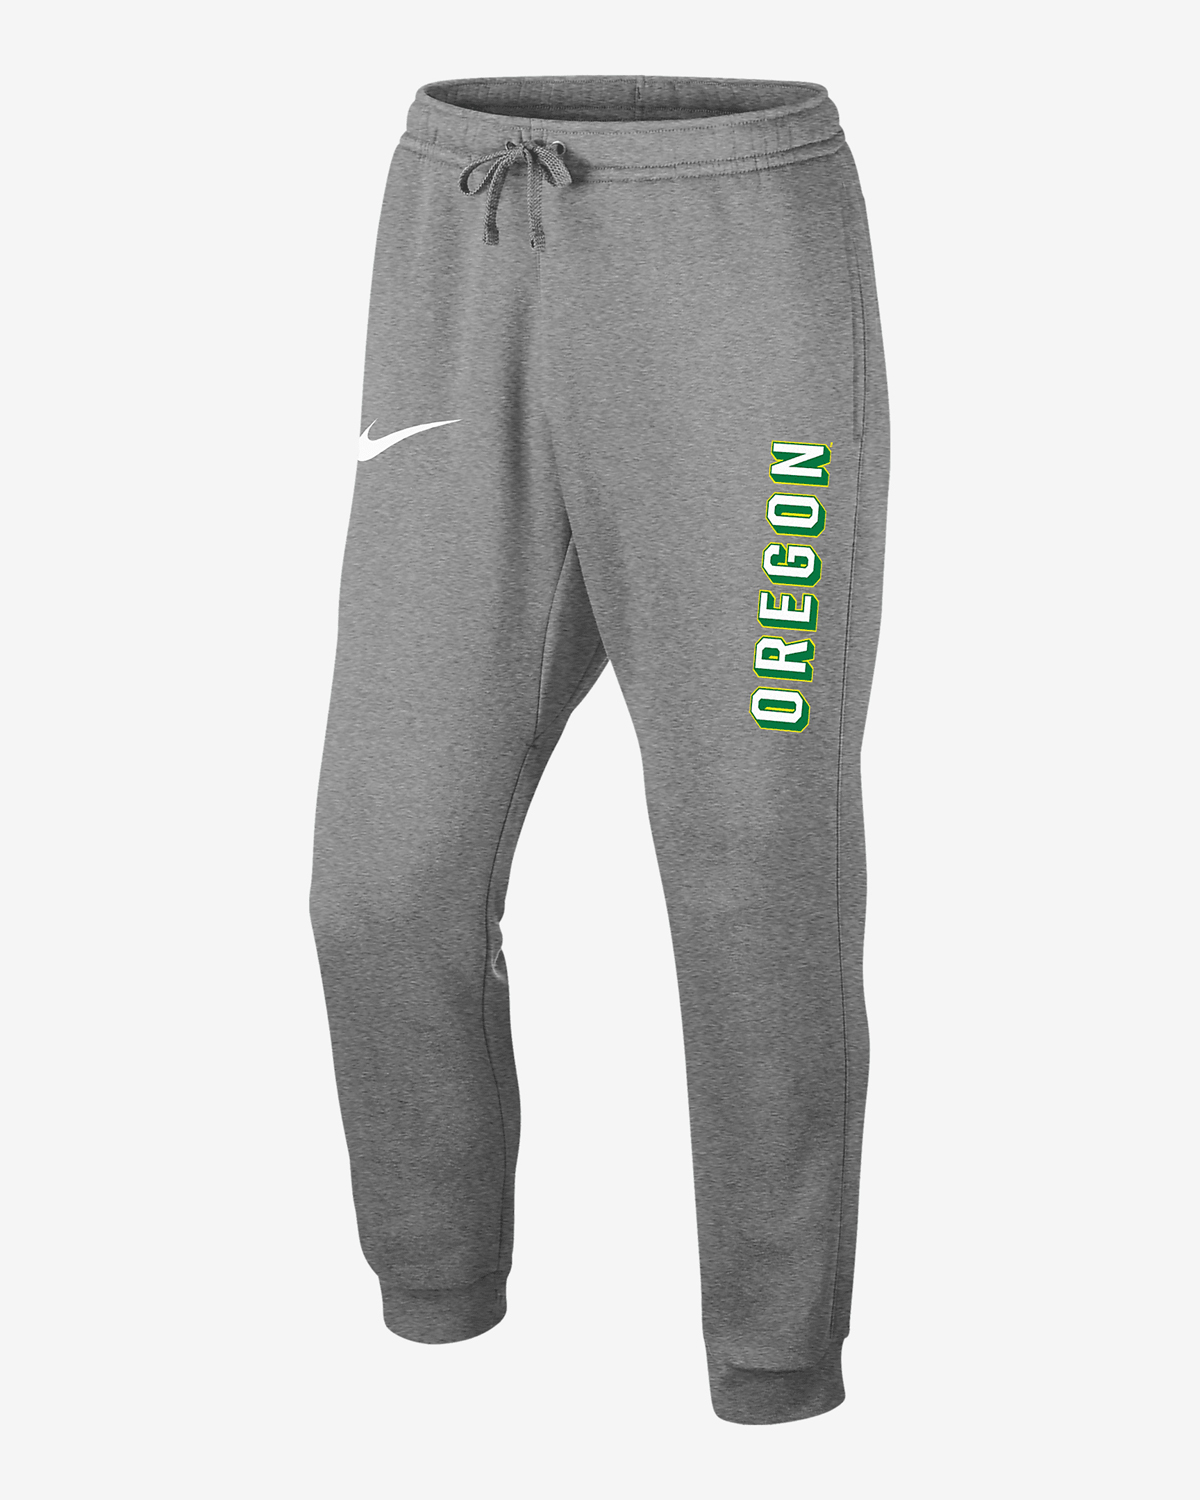 Nike-Dunk-Low-Oregon-Jogger-Pants